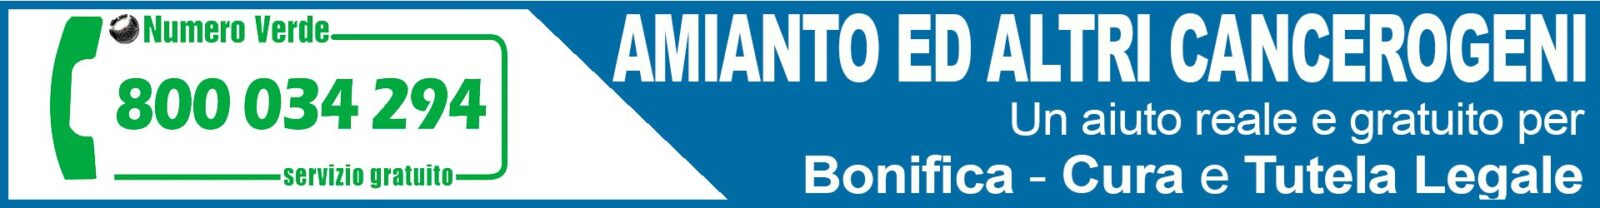 Osservatorio Nazionale Amianto Lazio